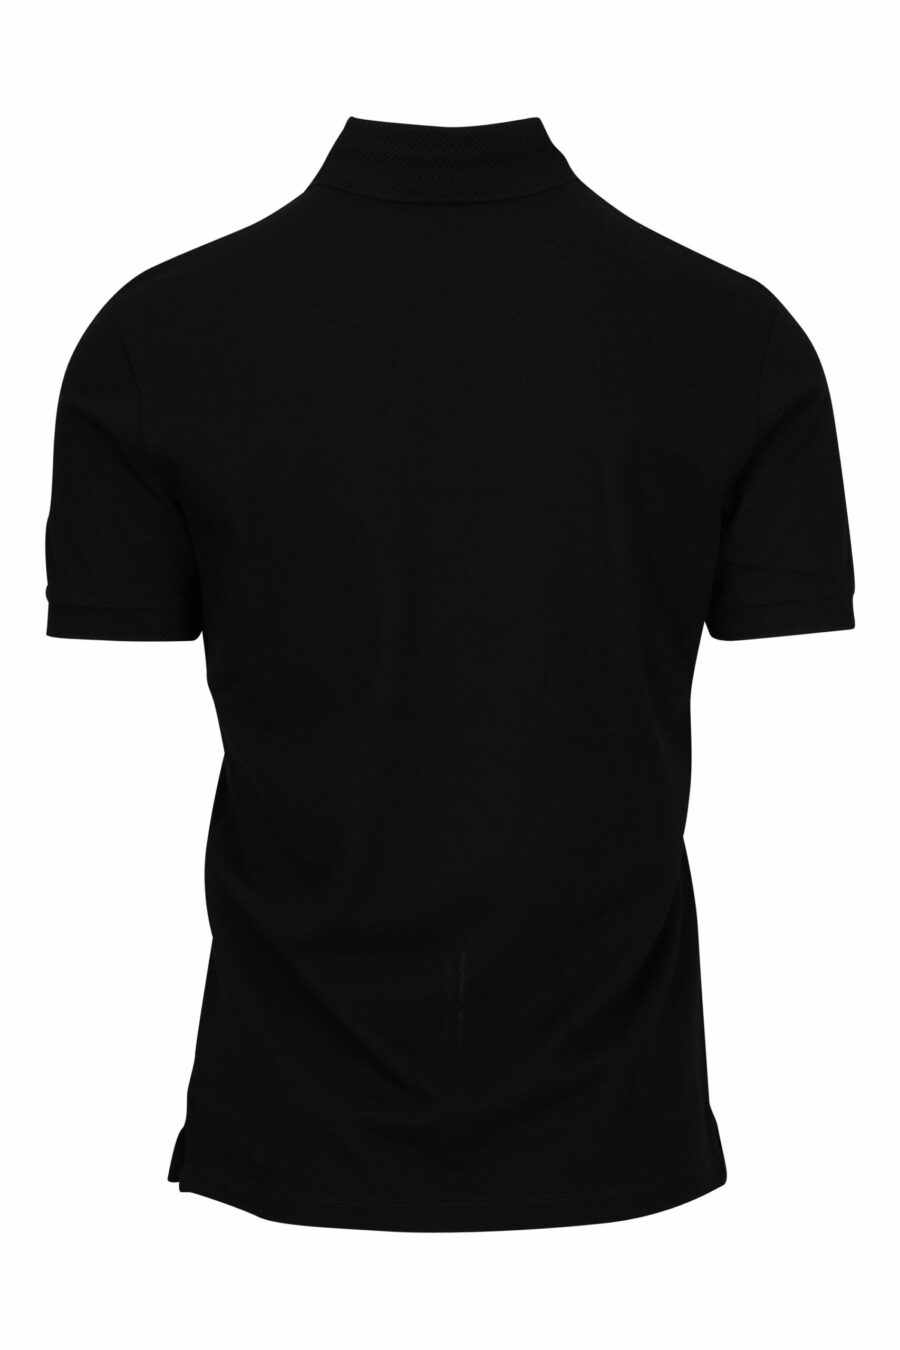 Schwarzes Poloshirt mit Adler-Mini-Logo - 8057970491989 1 skaliert